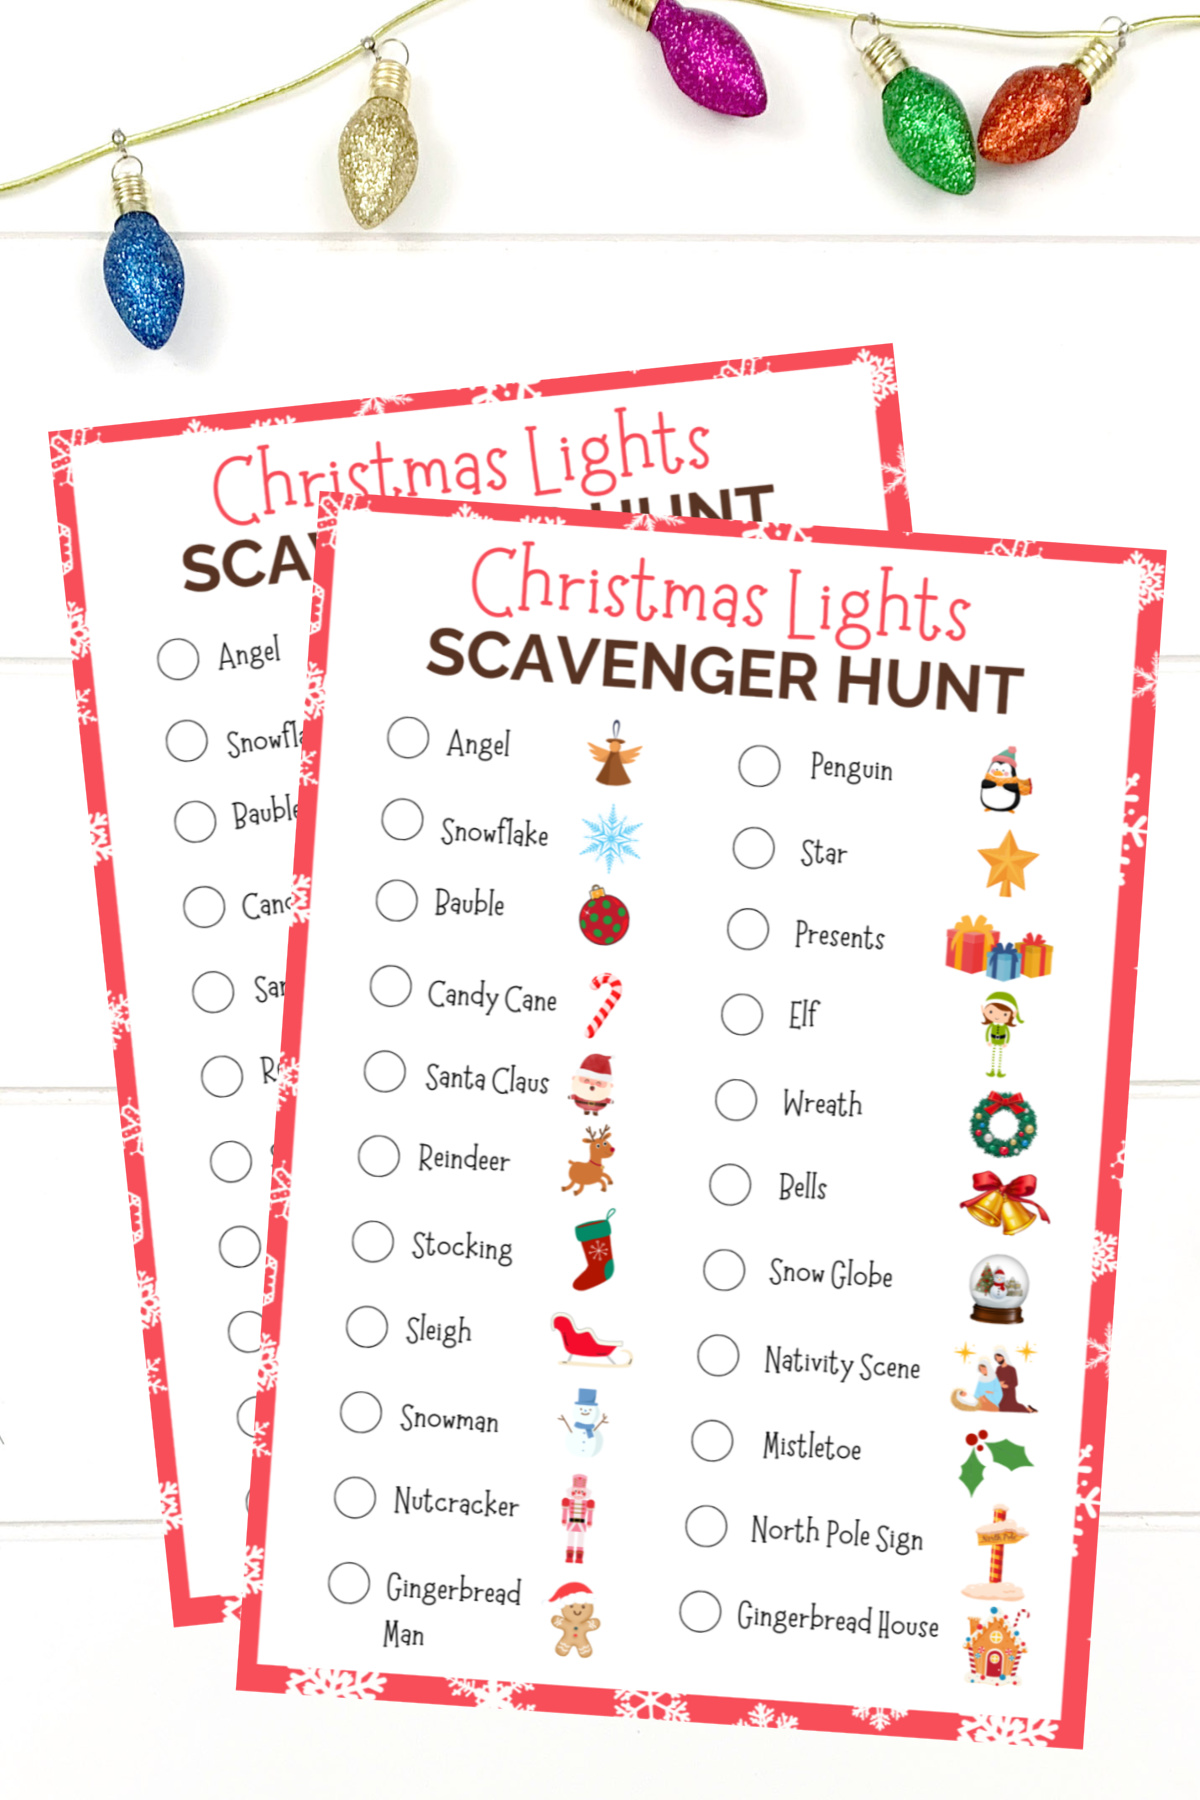 Christmas lights scavenger hunt printable.